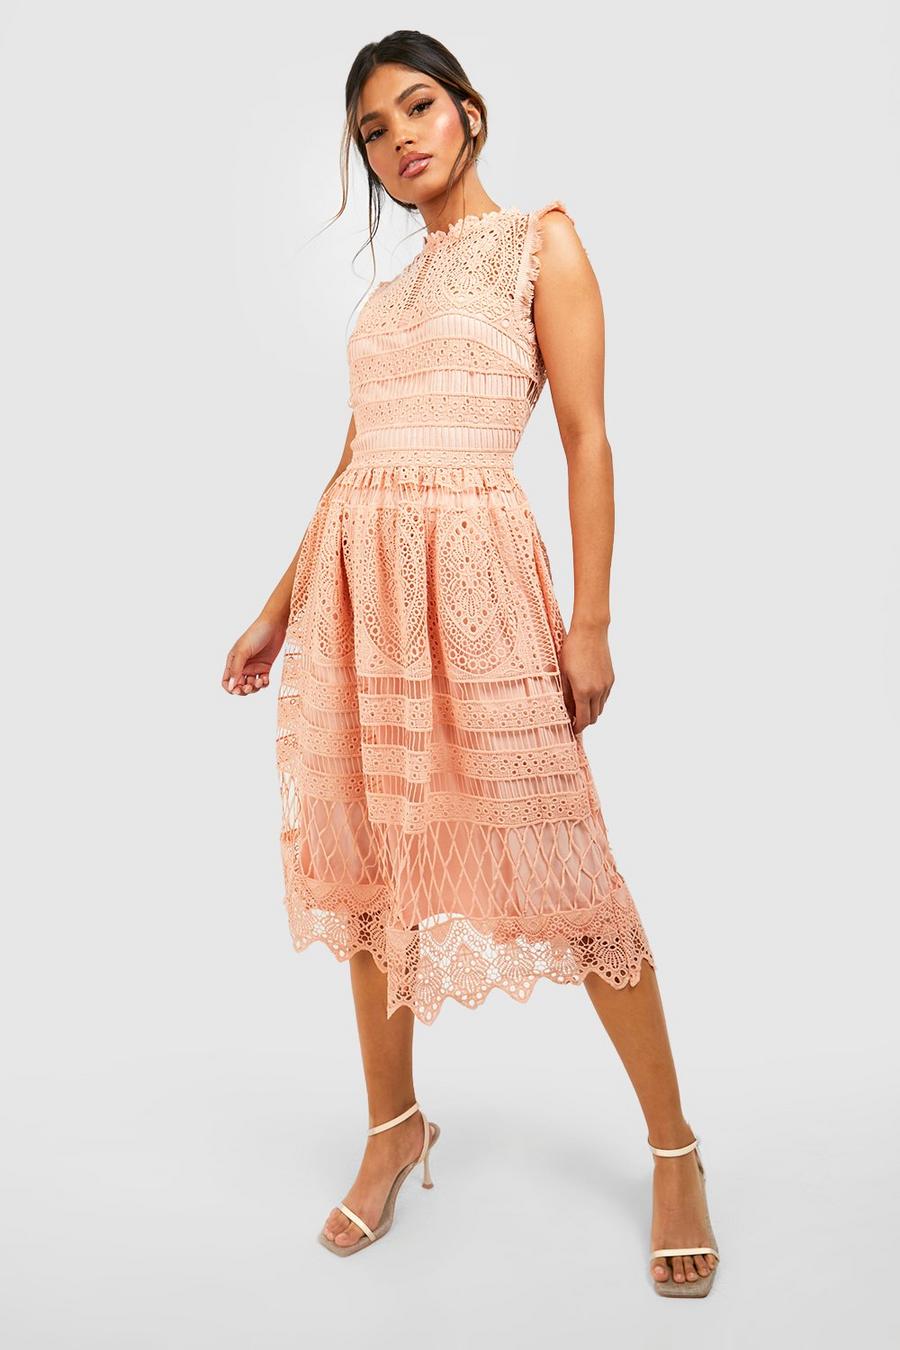 Blush rosa Boutique Lace Skater Bridesmaid Dress